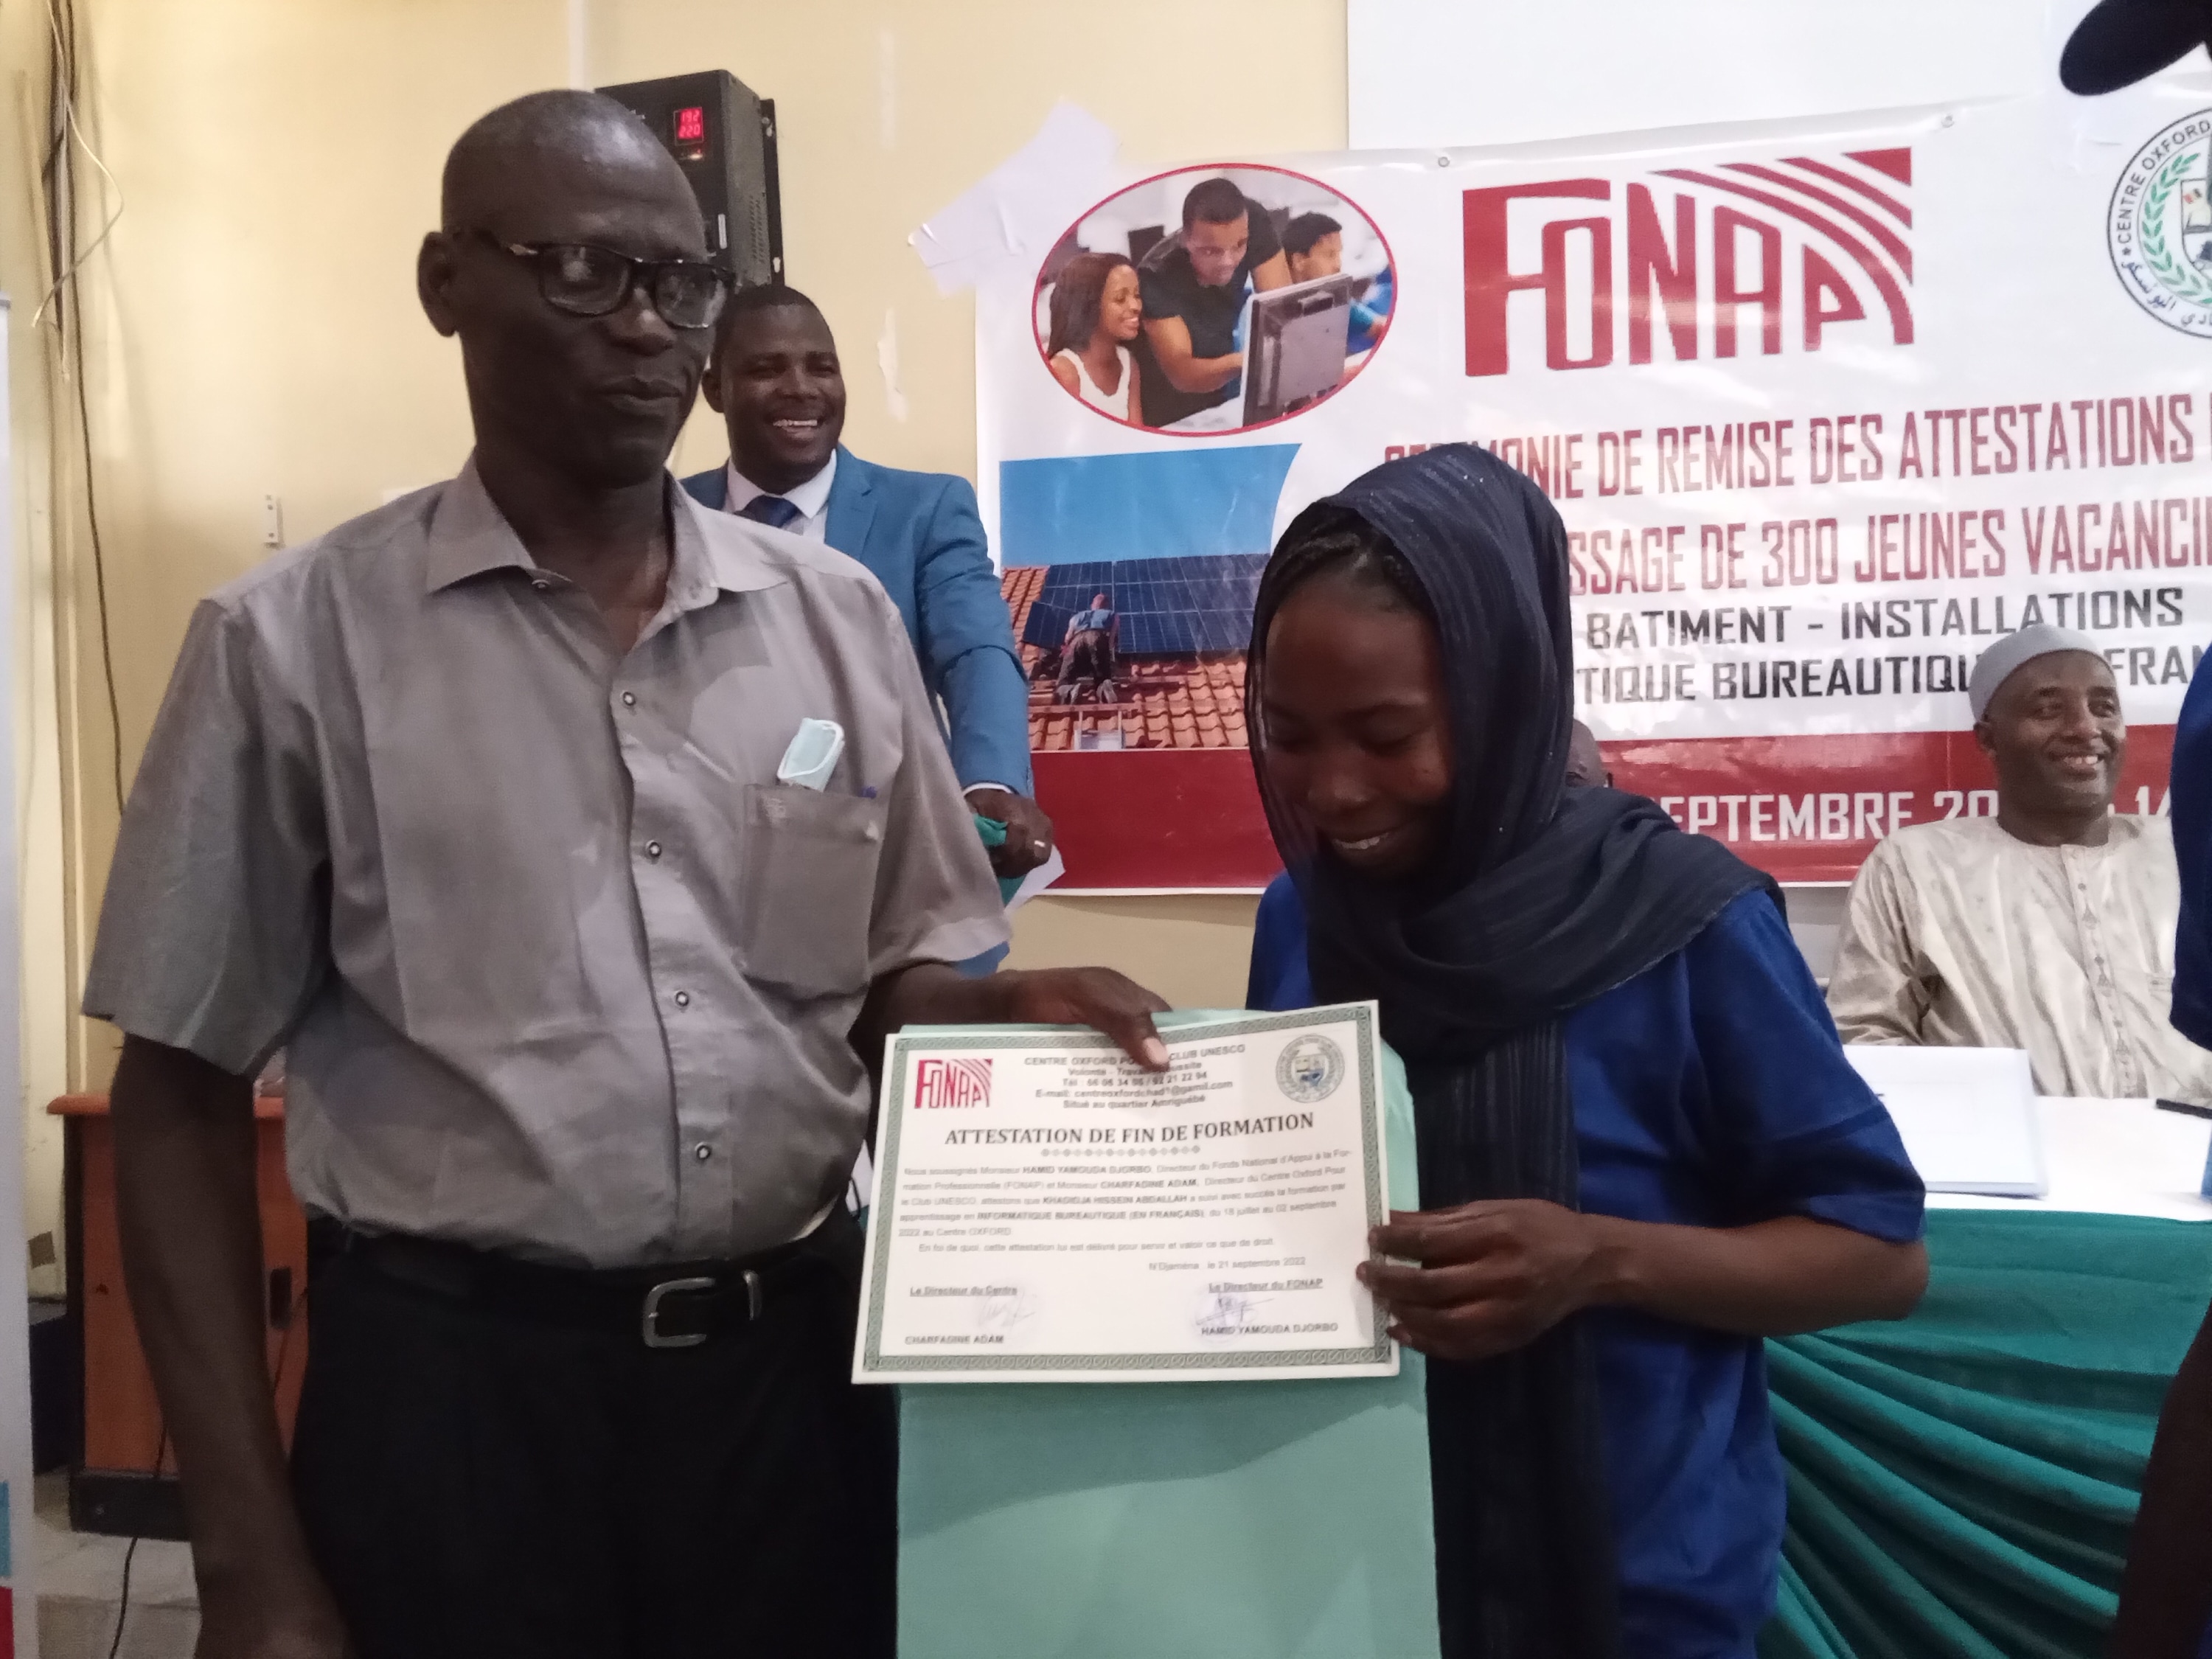 Tchad : 300 jeunes vacanciers reçoivent leurs parchemins de fin de formation professionnelle